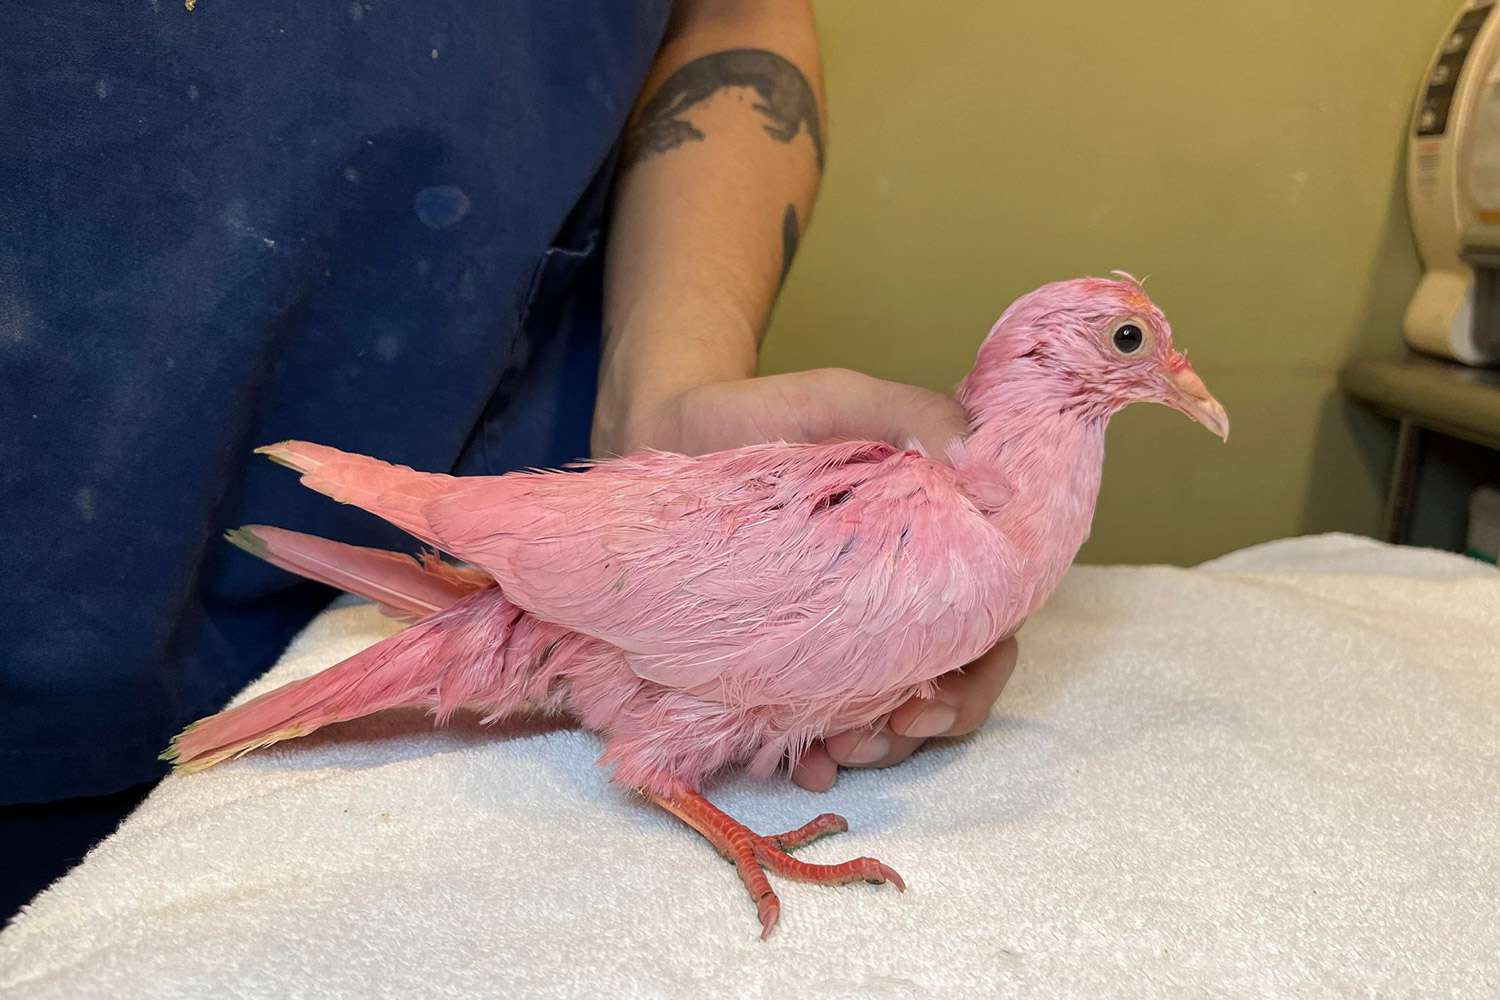 Animal Rescue, 'Mücadele Eden' Pembe Güvercin NYC'de Dolaşırken Bulunduktan Sonra 'Asla Kuş Boyamayın' Uyarısında Bulundu